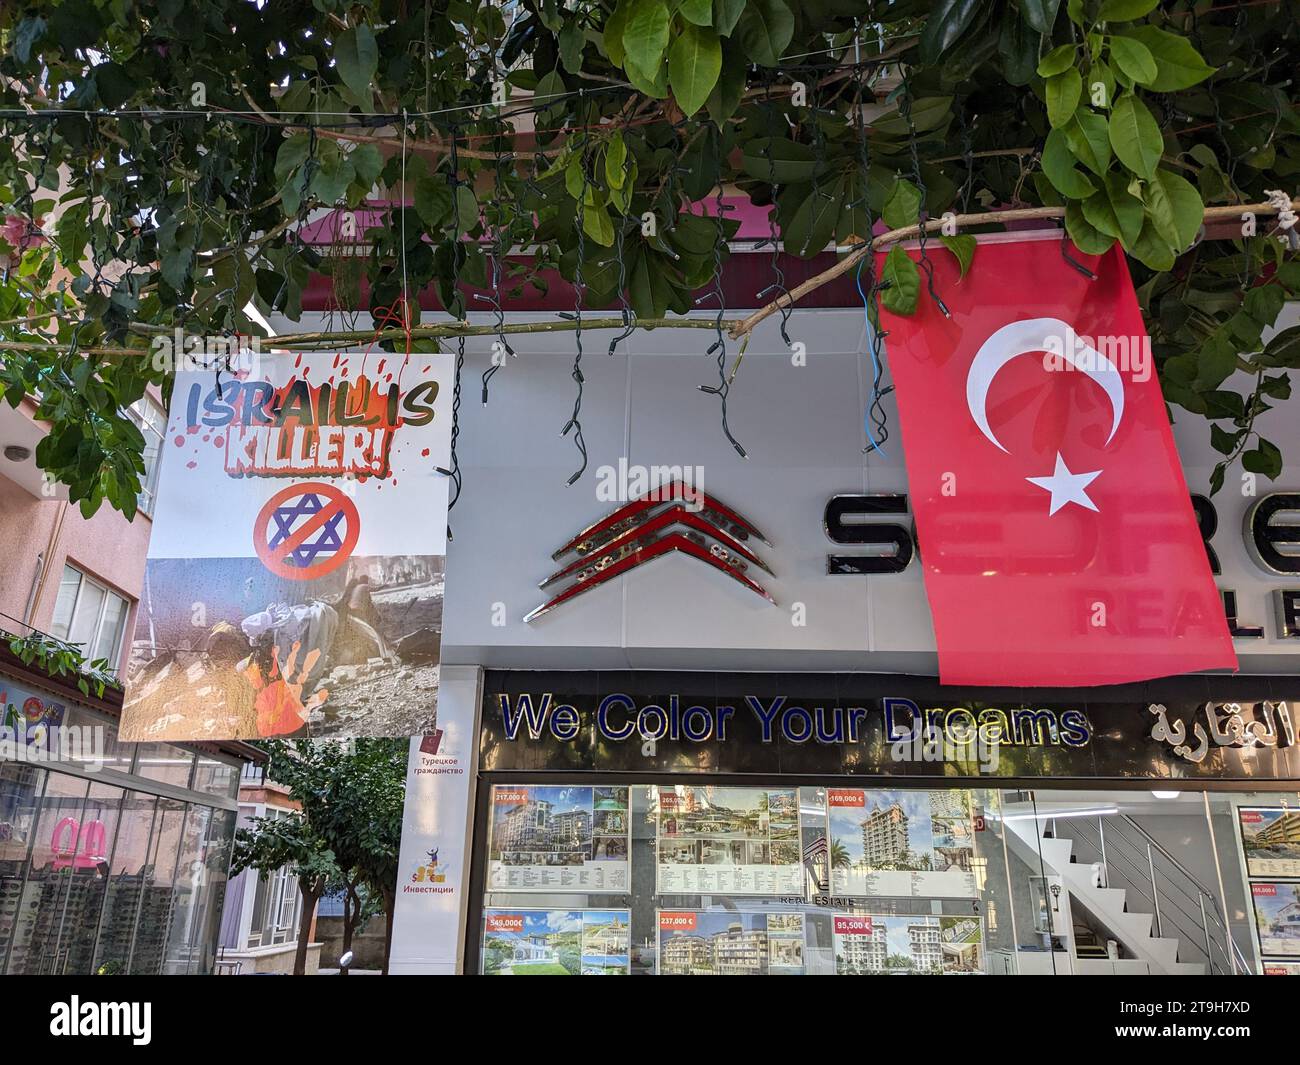 Turchia Alanya, proteste anti israeliane.proteste pro palestinesi-proteste anti israele bandiere con scritte 'killer israeliani' appese davanti a un negozio Foto Stock